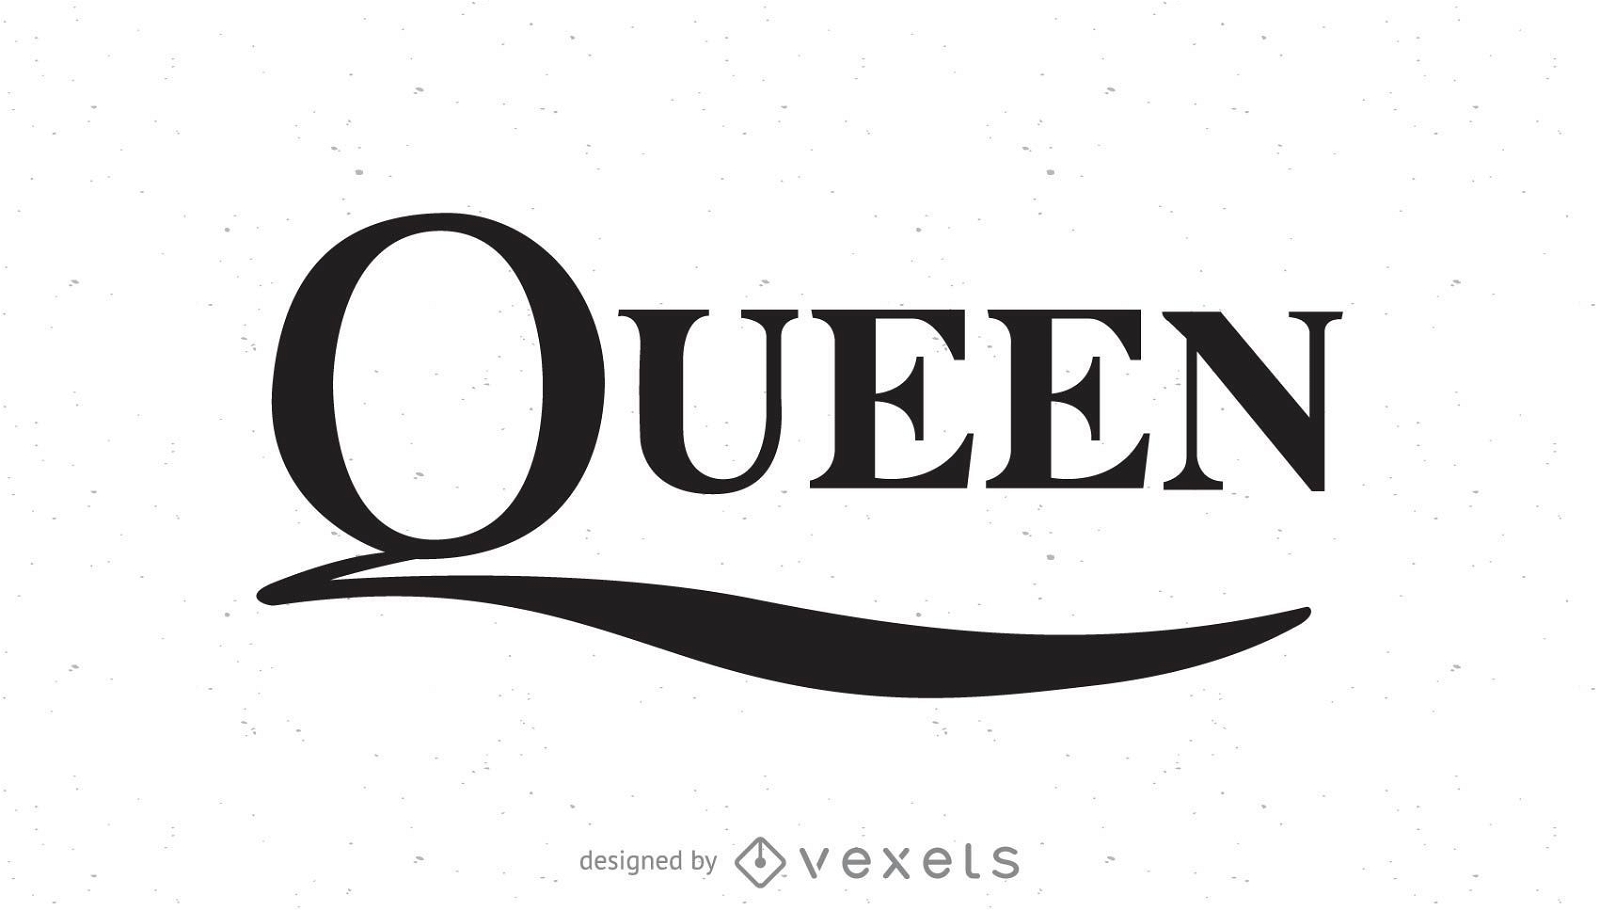 Queen band logo 